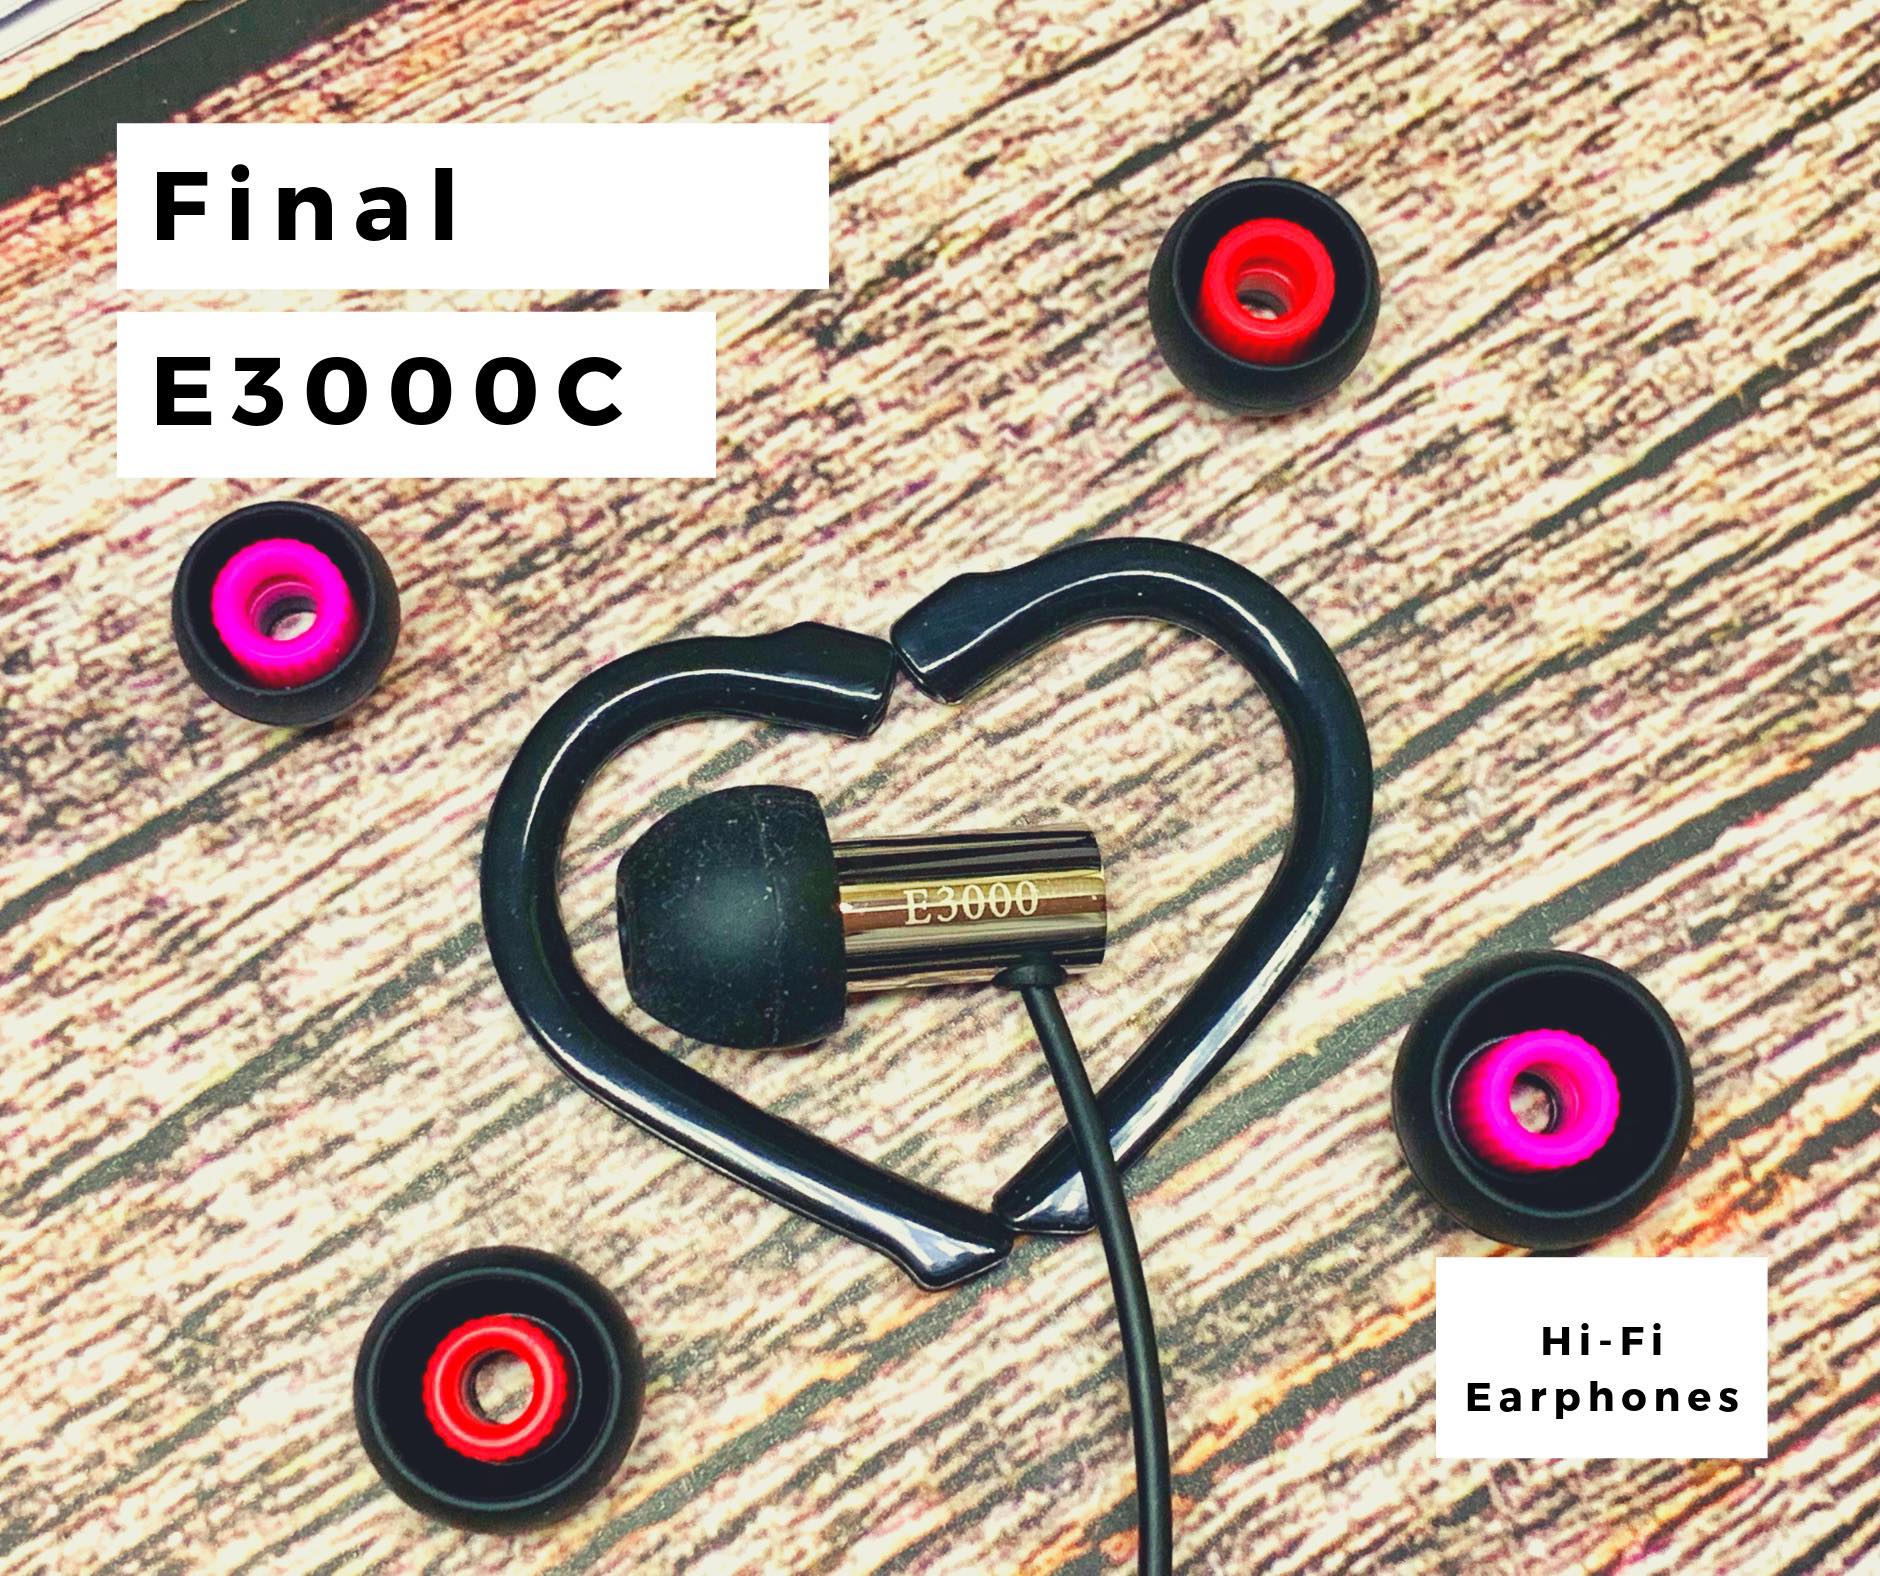 FINAL E3000C 線控耳機 – 從品牌歷史，說明平價卻擁有高評價的過程